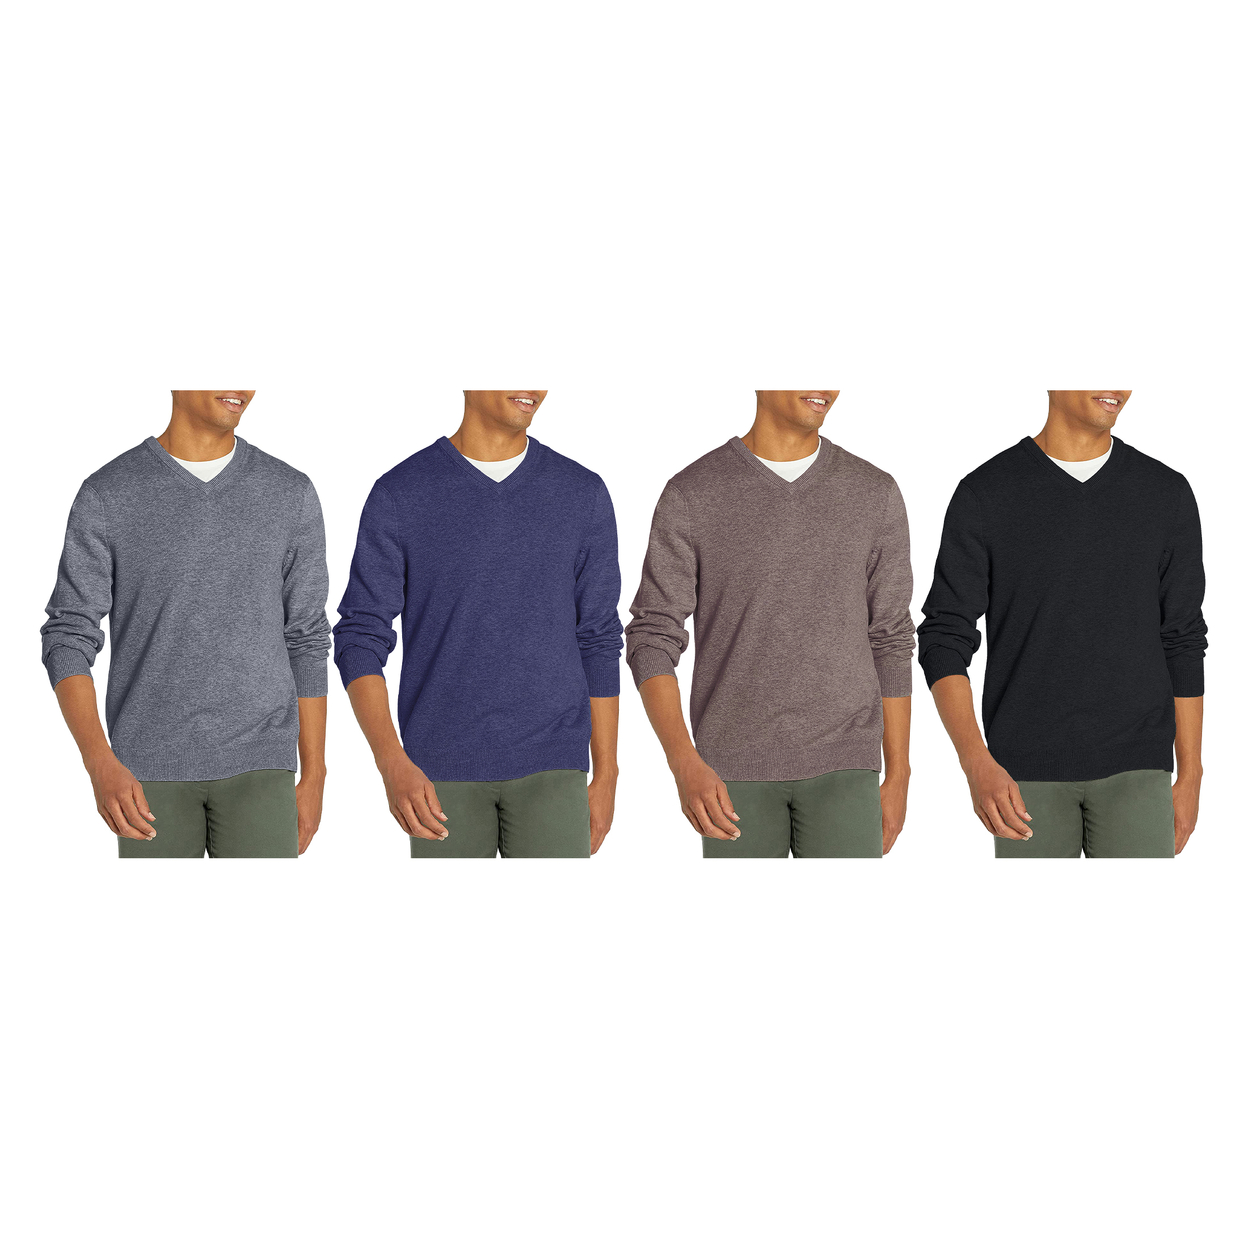 2-Pack: Men's Casual Ultra Soft Slim Fit Warm Knit V-Neck Sweater - Black & Blue, Large